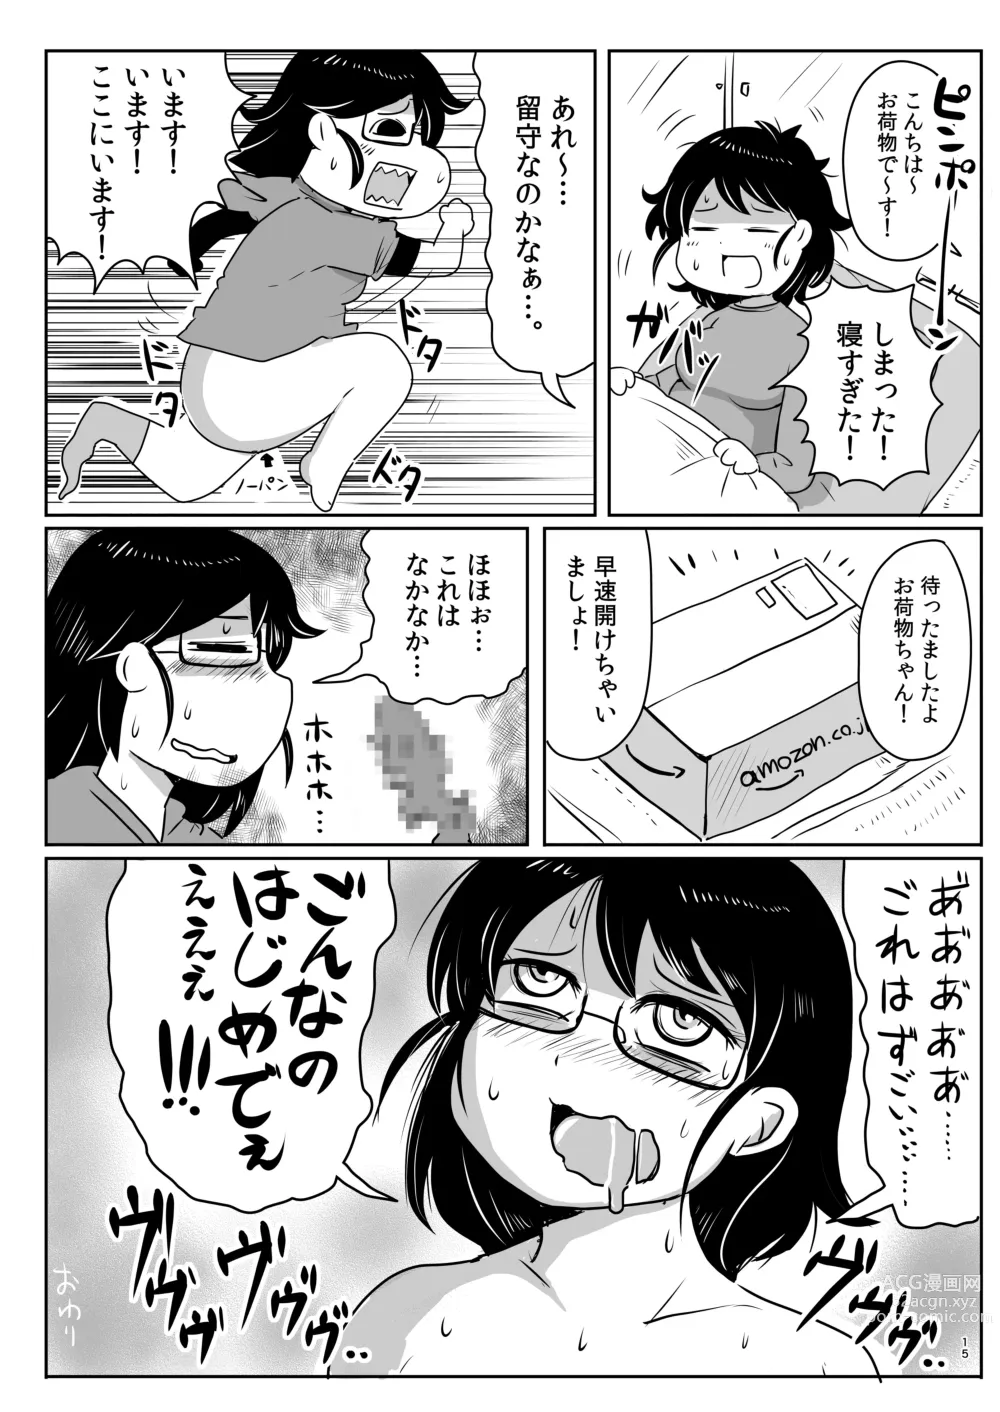 Page 14 of doujinshi Shiko_Ne_Freak EXTEND